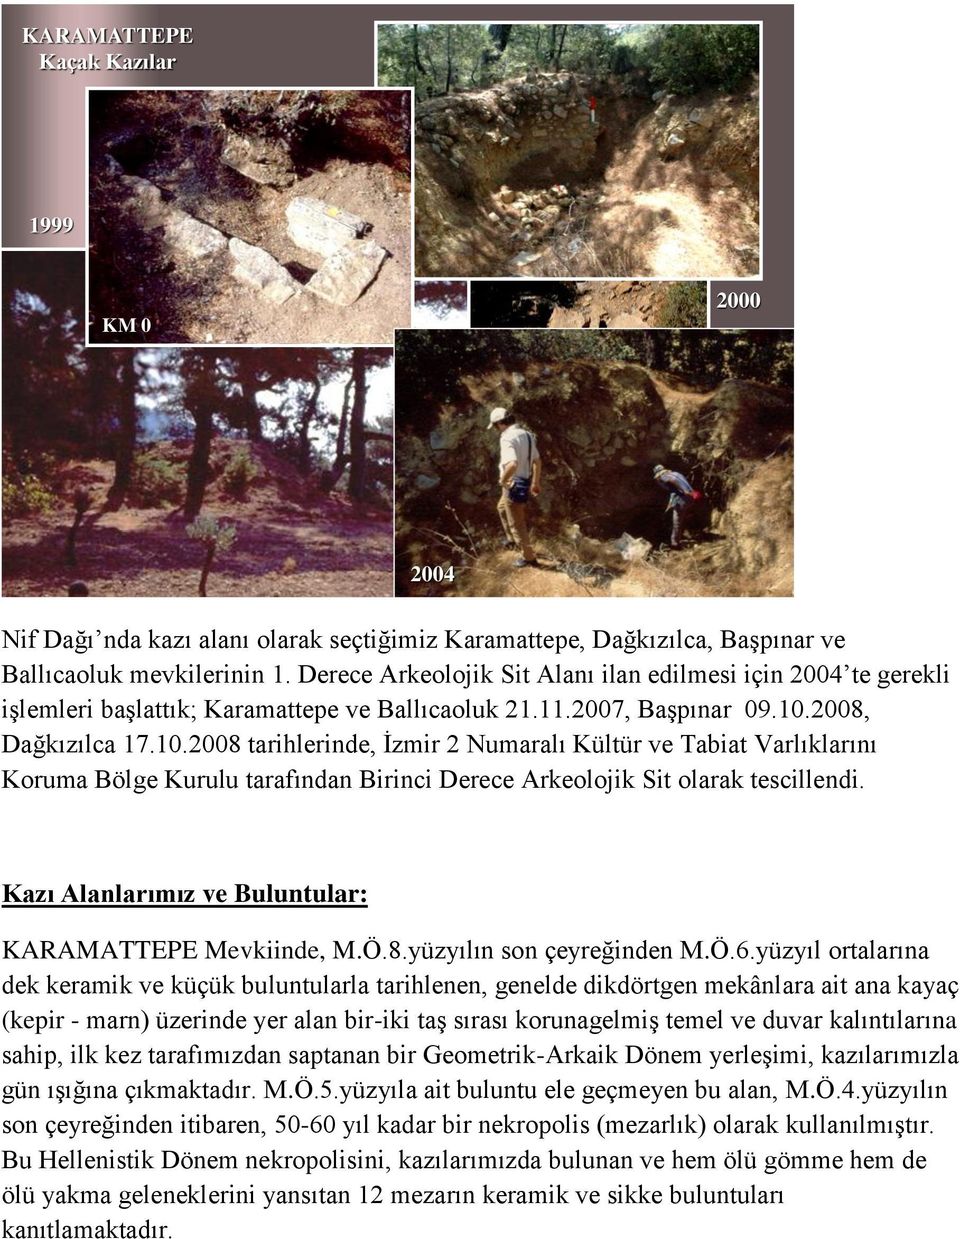 2008, Dağkızılca 17.10.2008 tarihlerinde, Ġzmir 2 Numaralı Kültür ve Tabiat Varlıklarını Koruma Bölge Kurulu tarafından Birinci Derece Arkeolojik Sit olarak tescillendi.